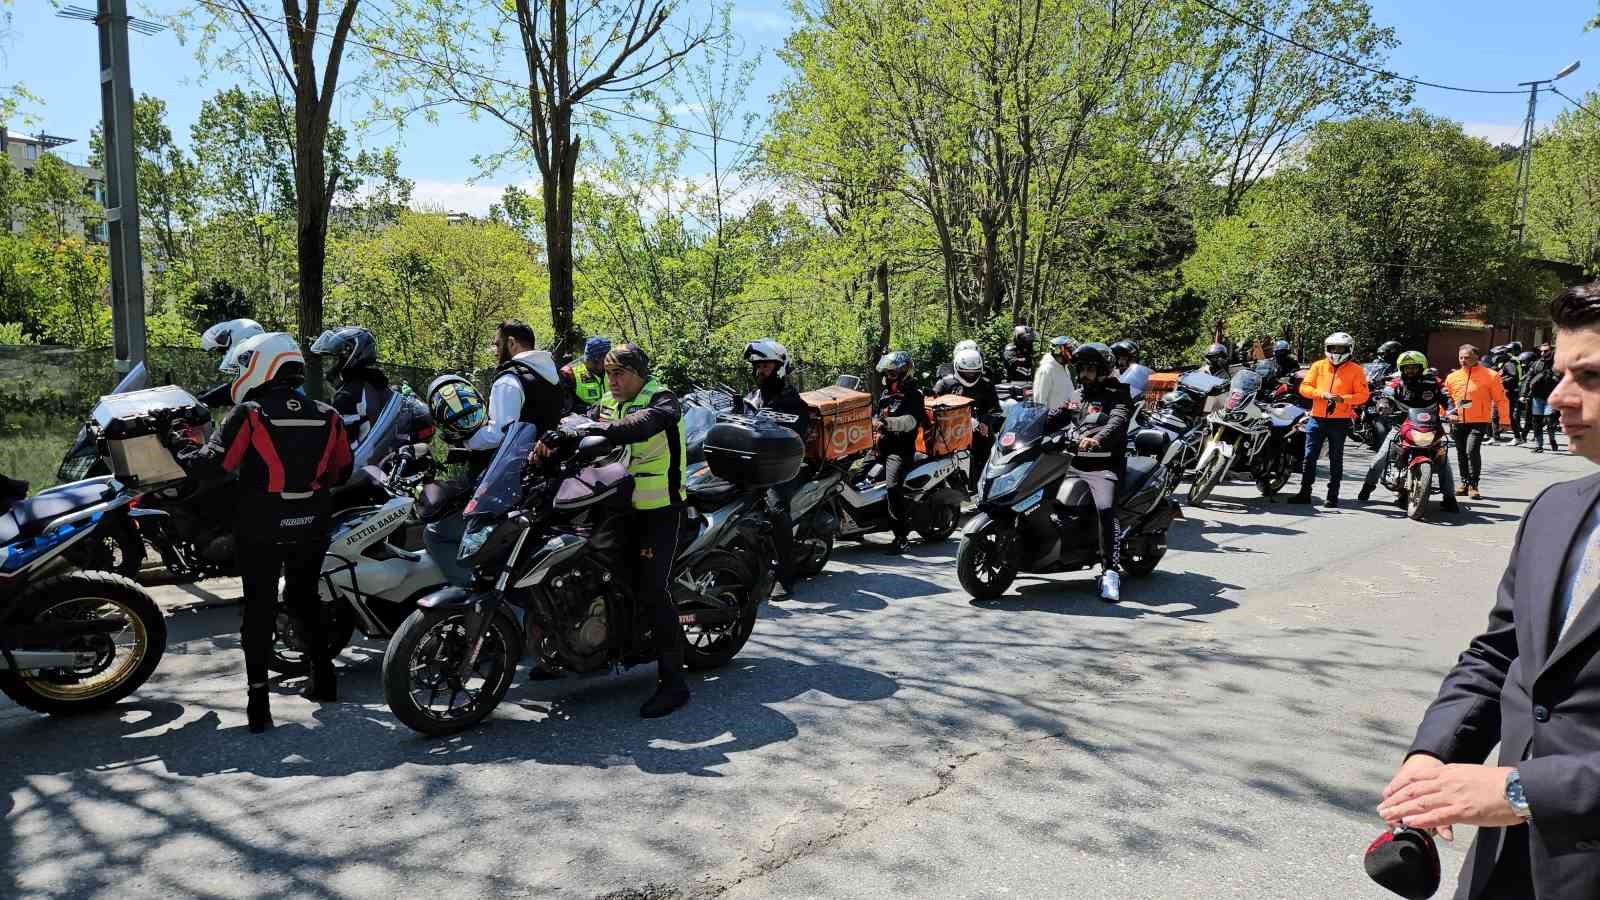 Motosikletliler ’Oğuz Murat Aci için adalet’ diyerek buluştu
